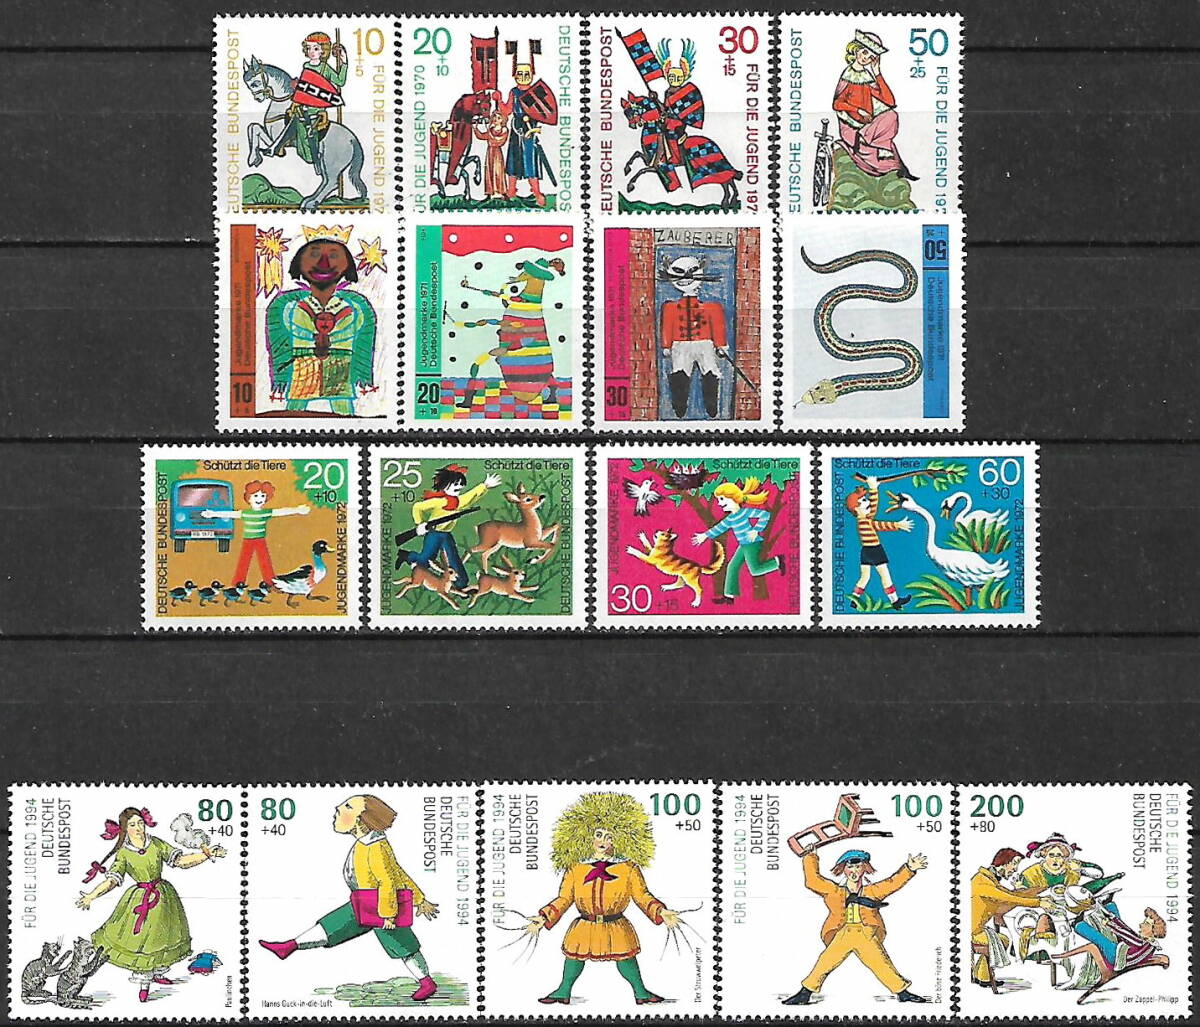 ★1970-1994年 -ドイツ- かわいい切手「おとぎ話 シリーズ」4種完+4種完+4種完+5種完 未使用(MNH)★ZH-330の画像1